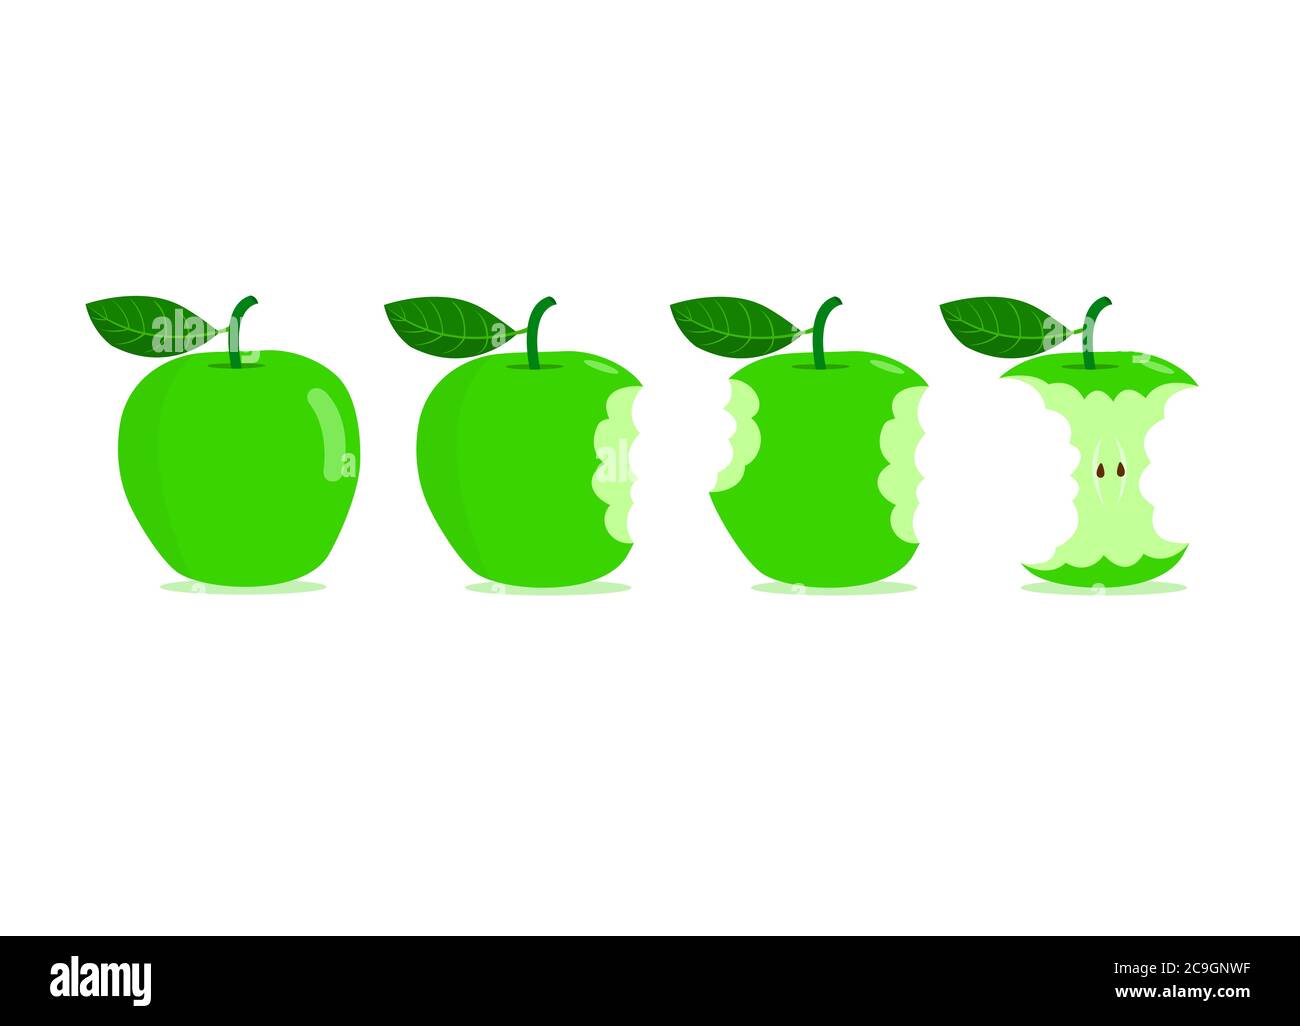 Grüne Äpfel mit Bissspuren isoliert auf weißem Hintergrund. Bissspuren auf grünen Äpfeln. Stock Vektor